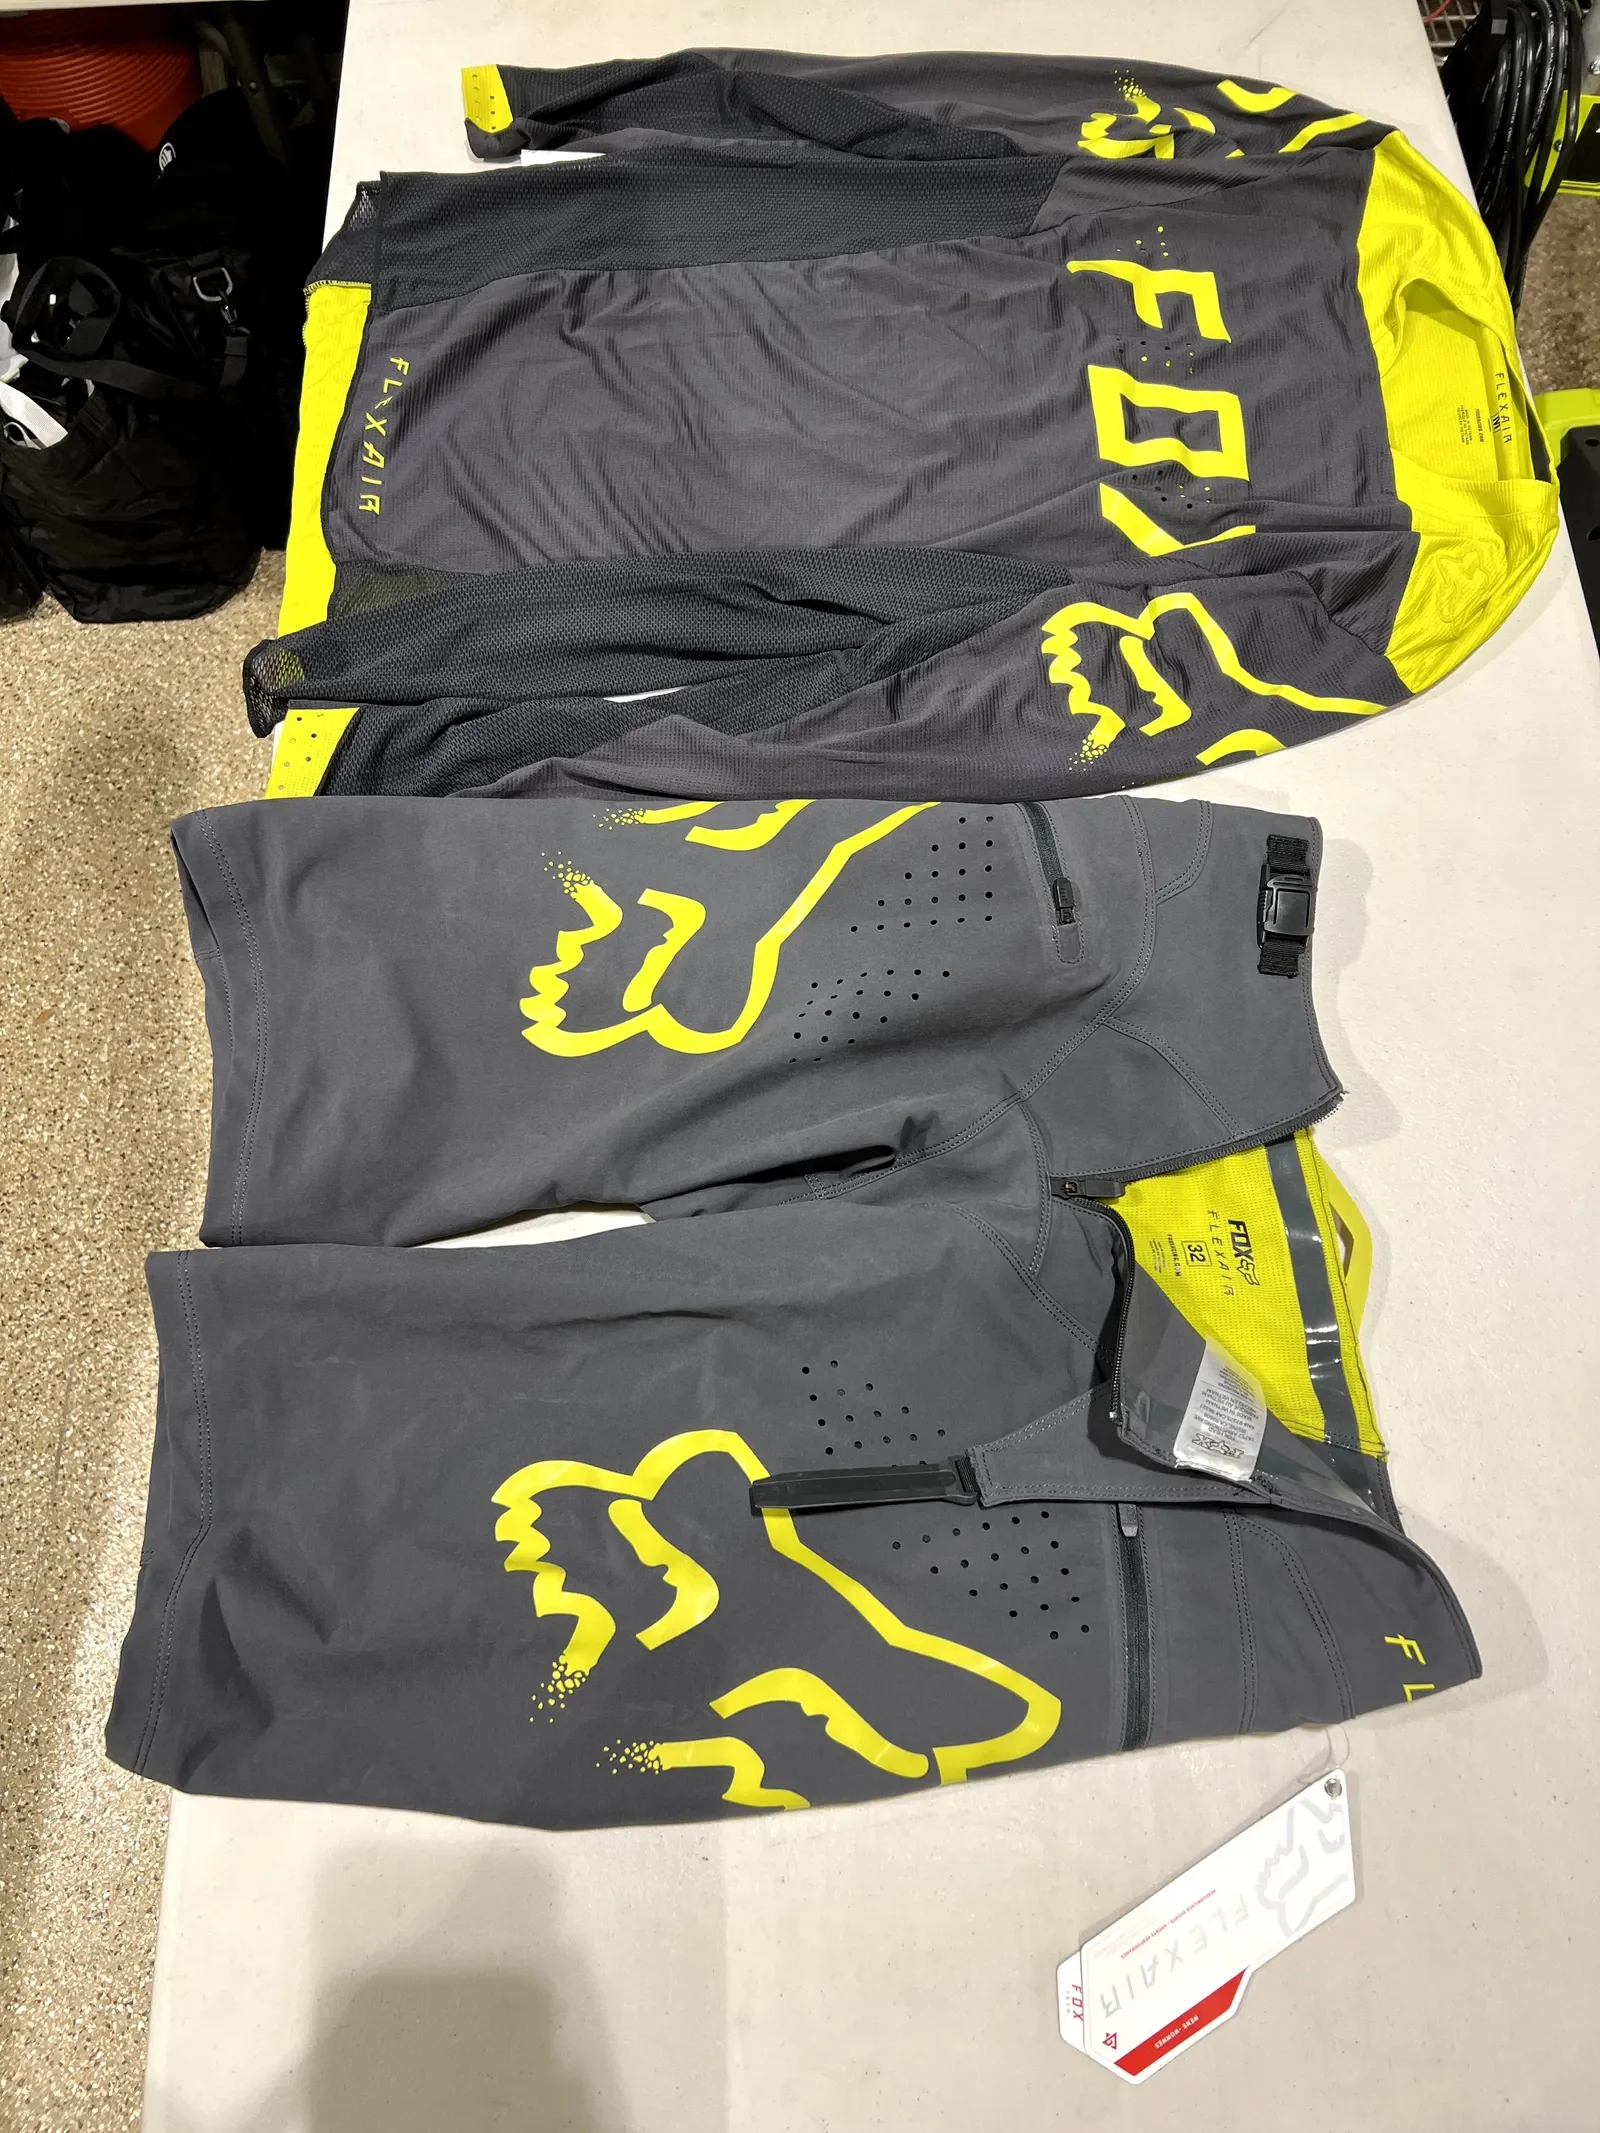 Fox Racing MTB kit (jersey/shorts) Medium/32